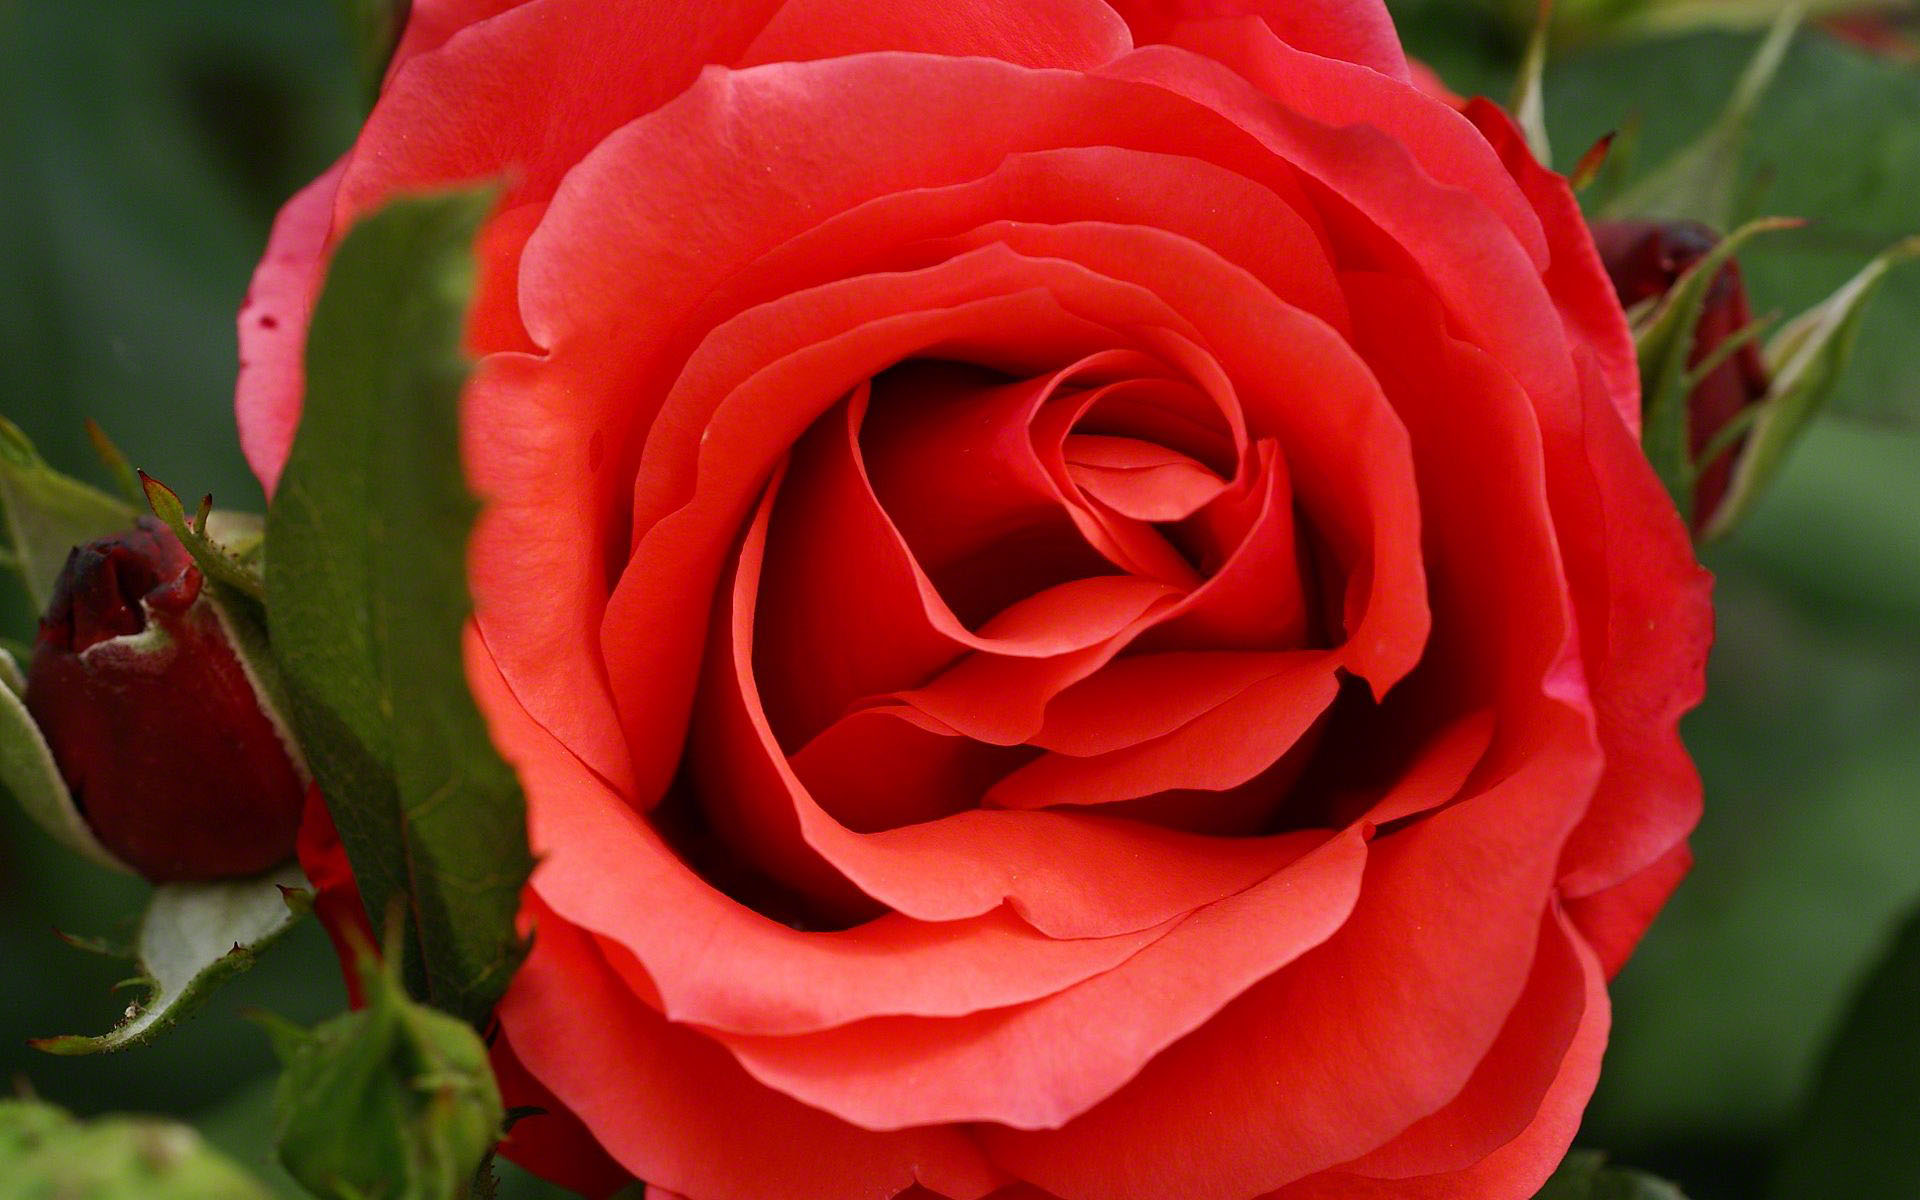 Red macro rose.